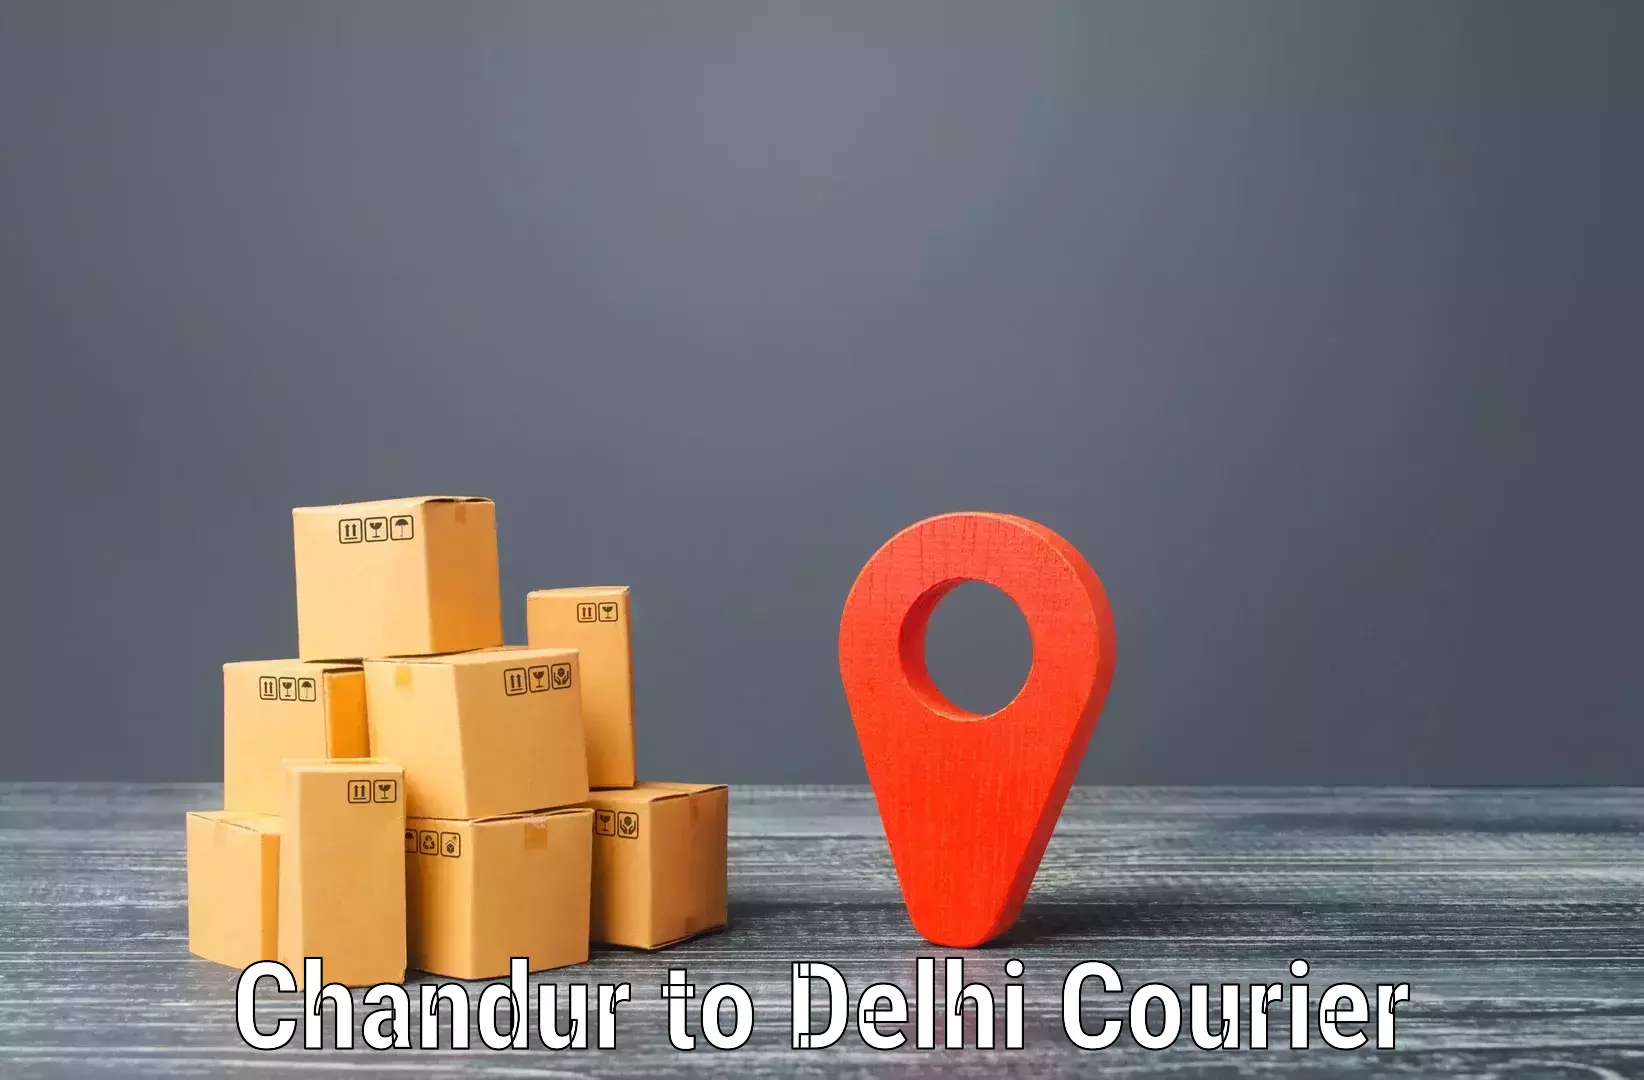 Efficient freight service in Chandur to IIT Delhi